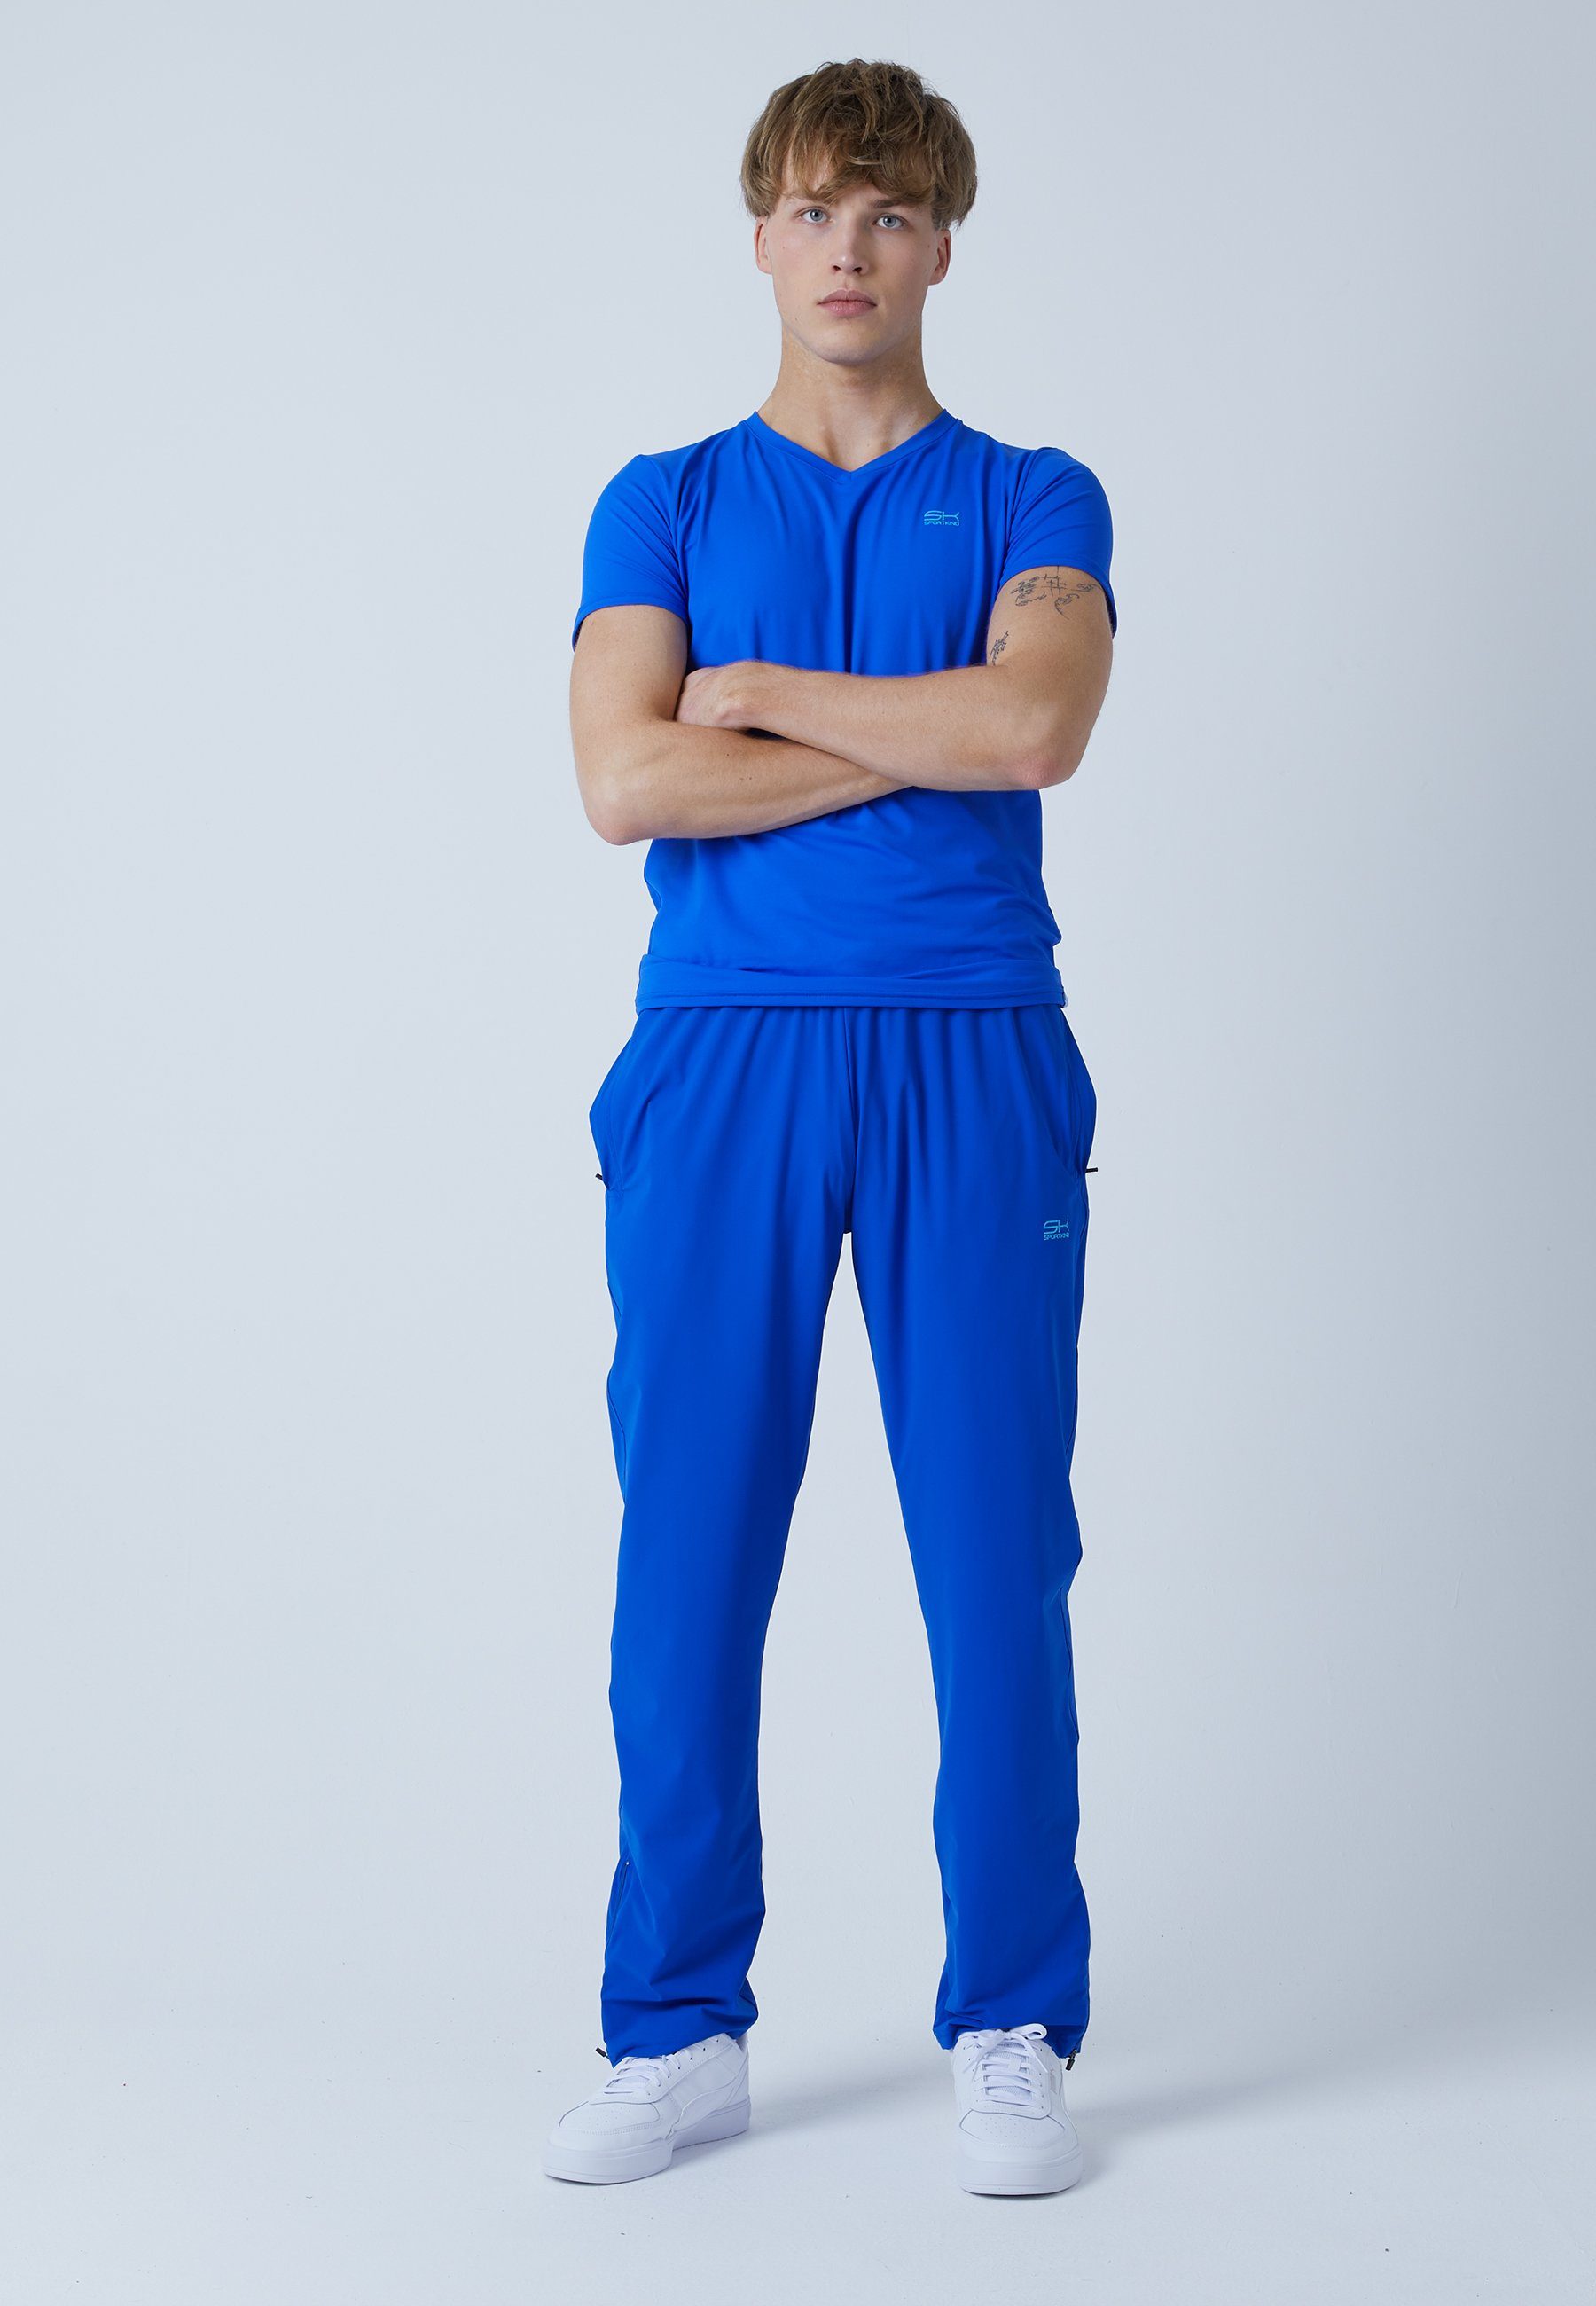 SPORTKIND Sporthose Tennis Jogginghose & kobaltblau Woven Jungen Herren Trainingshose